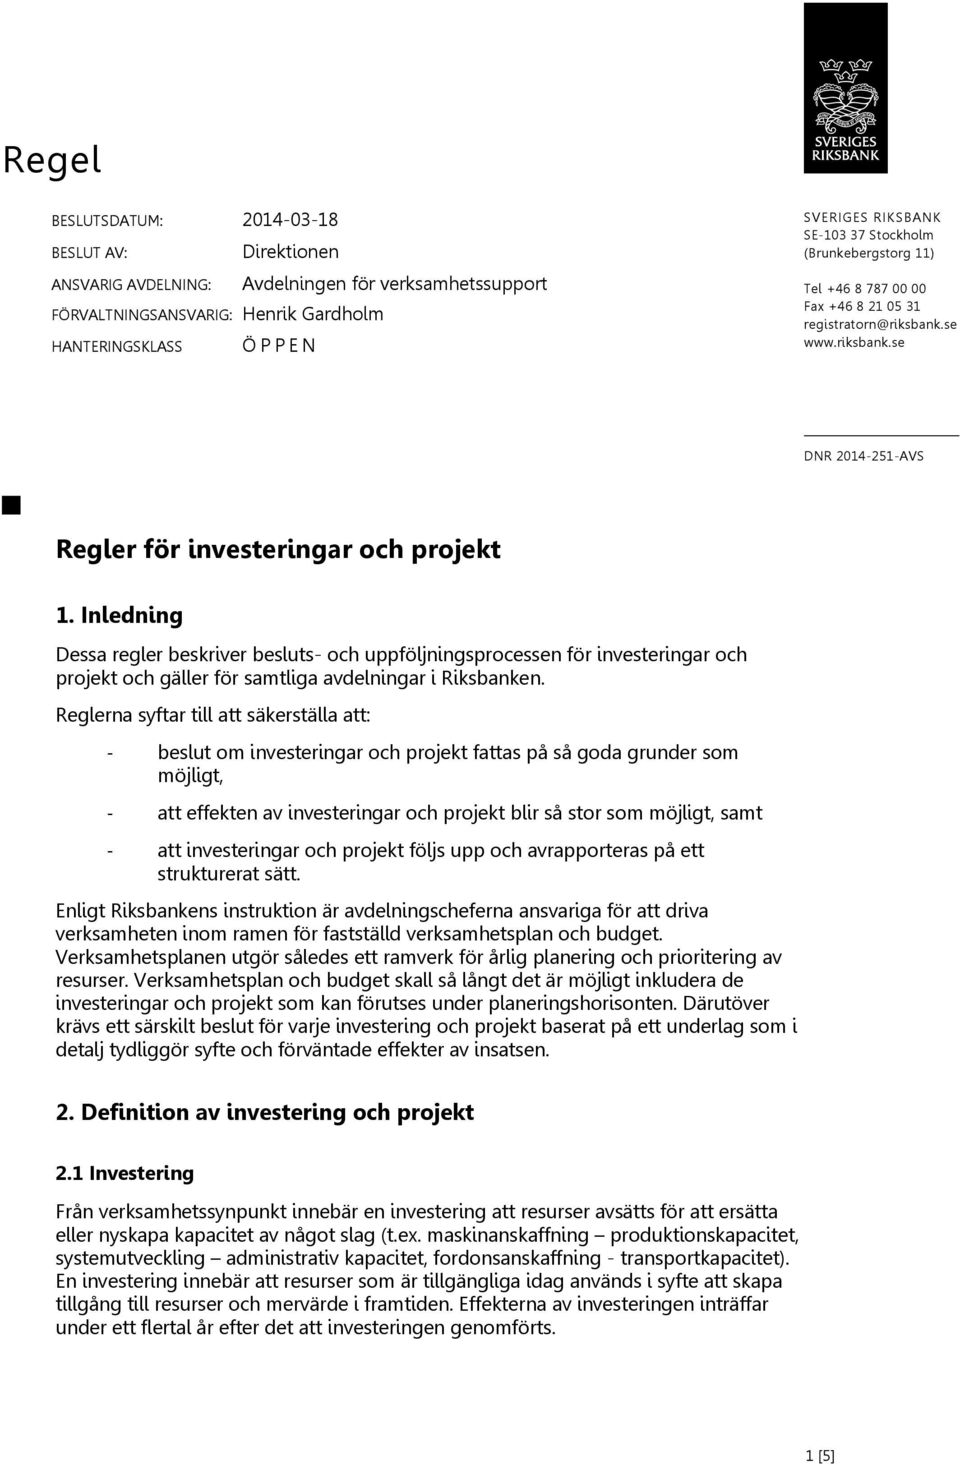 Inledning Dessa regler beskriver besluts- och uppföljningsprocessen för investeringar och projekt och gäller för samtliga avdelningar i Riksbanken.